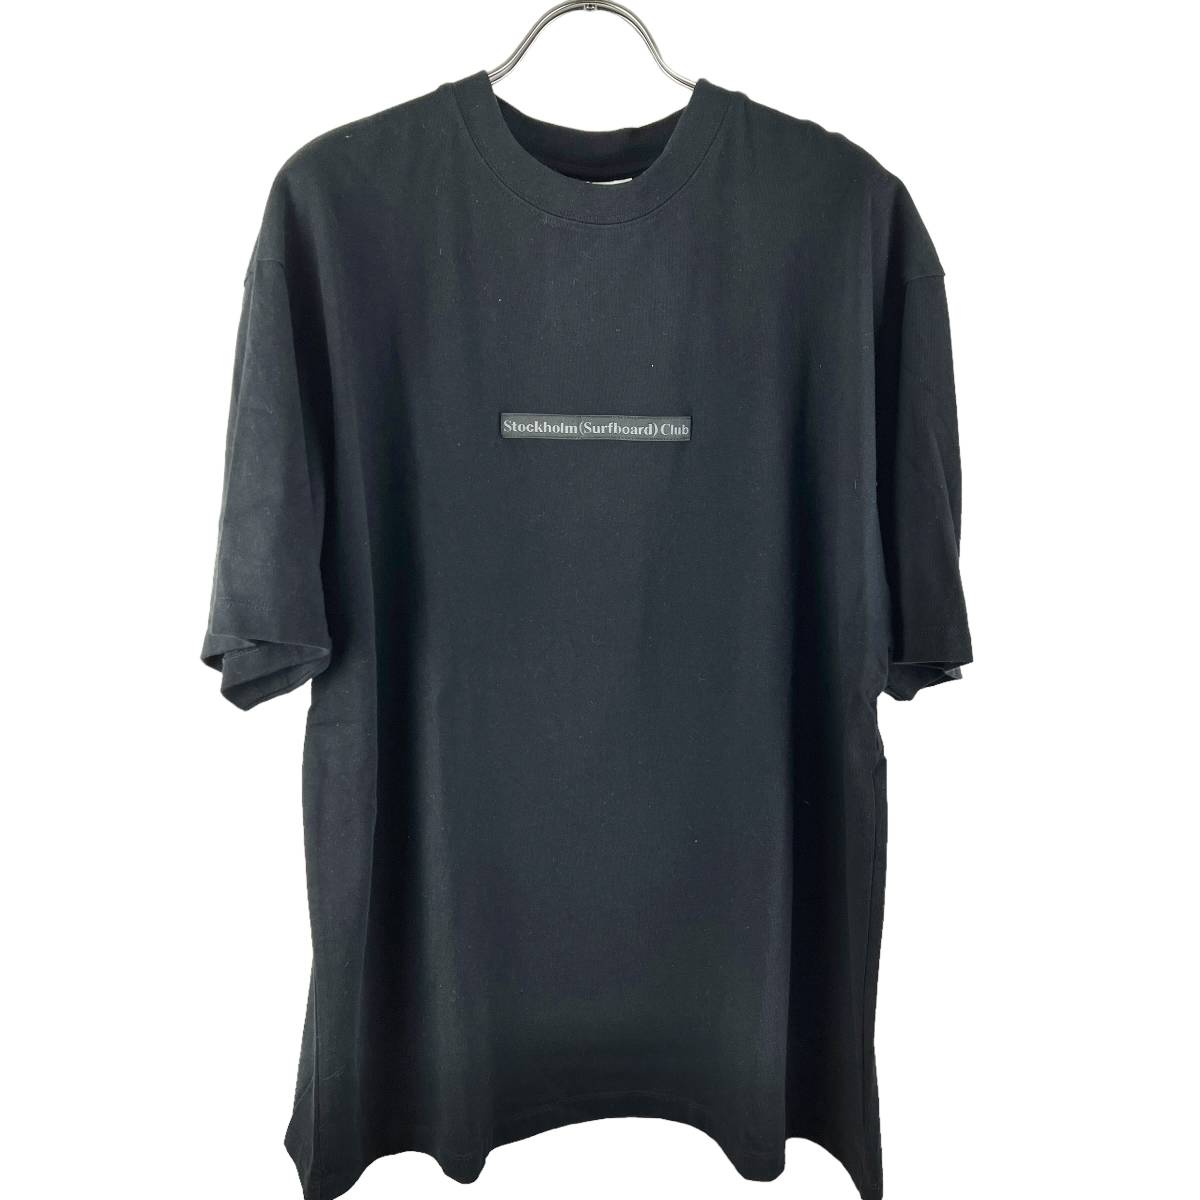 Stockholm(ストックホルム) Surfboard Club T Shirt (black)